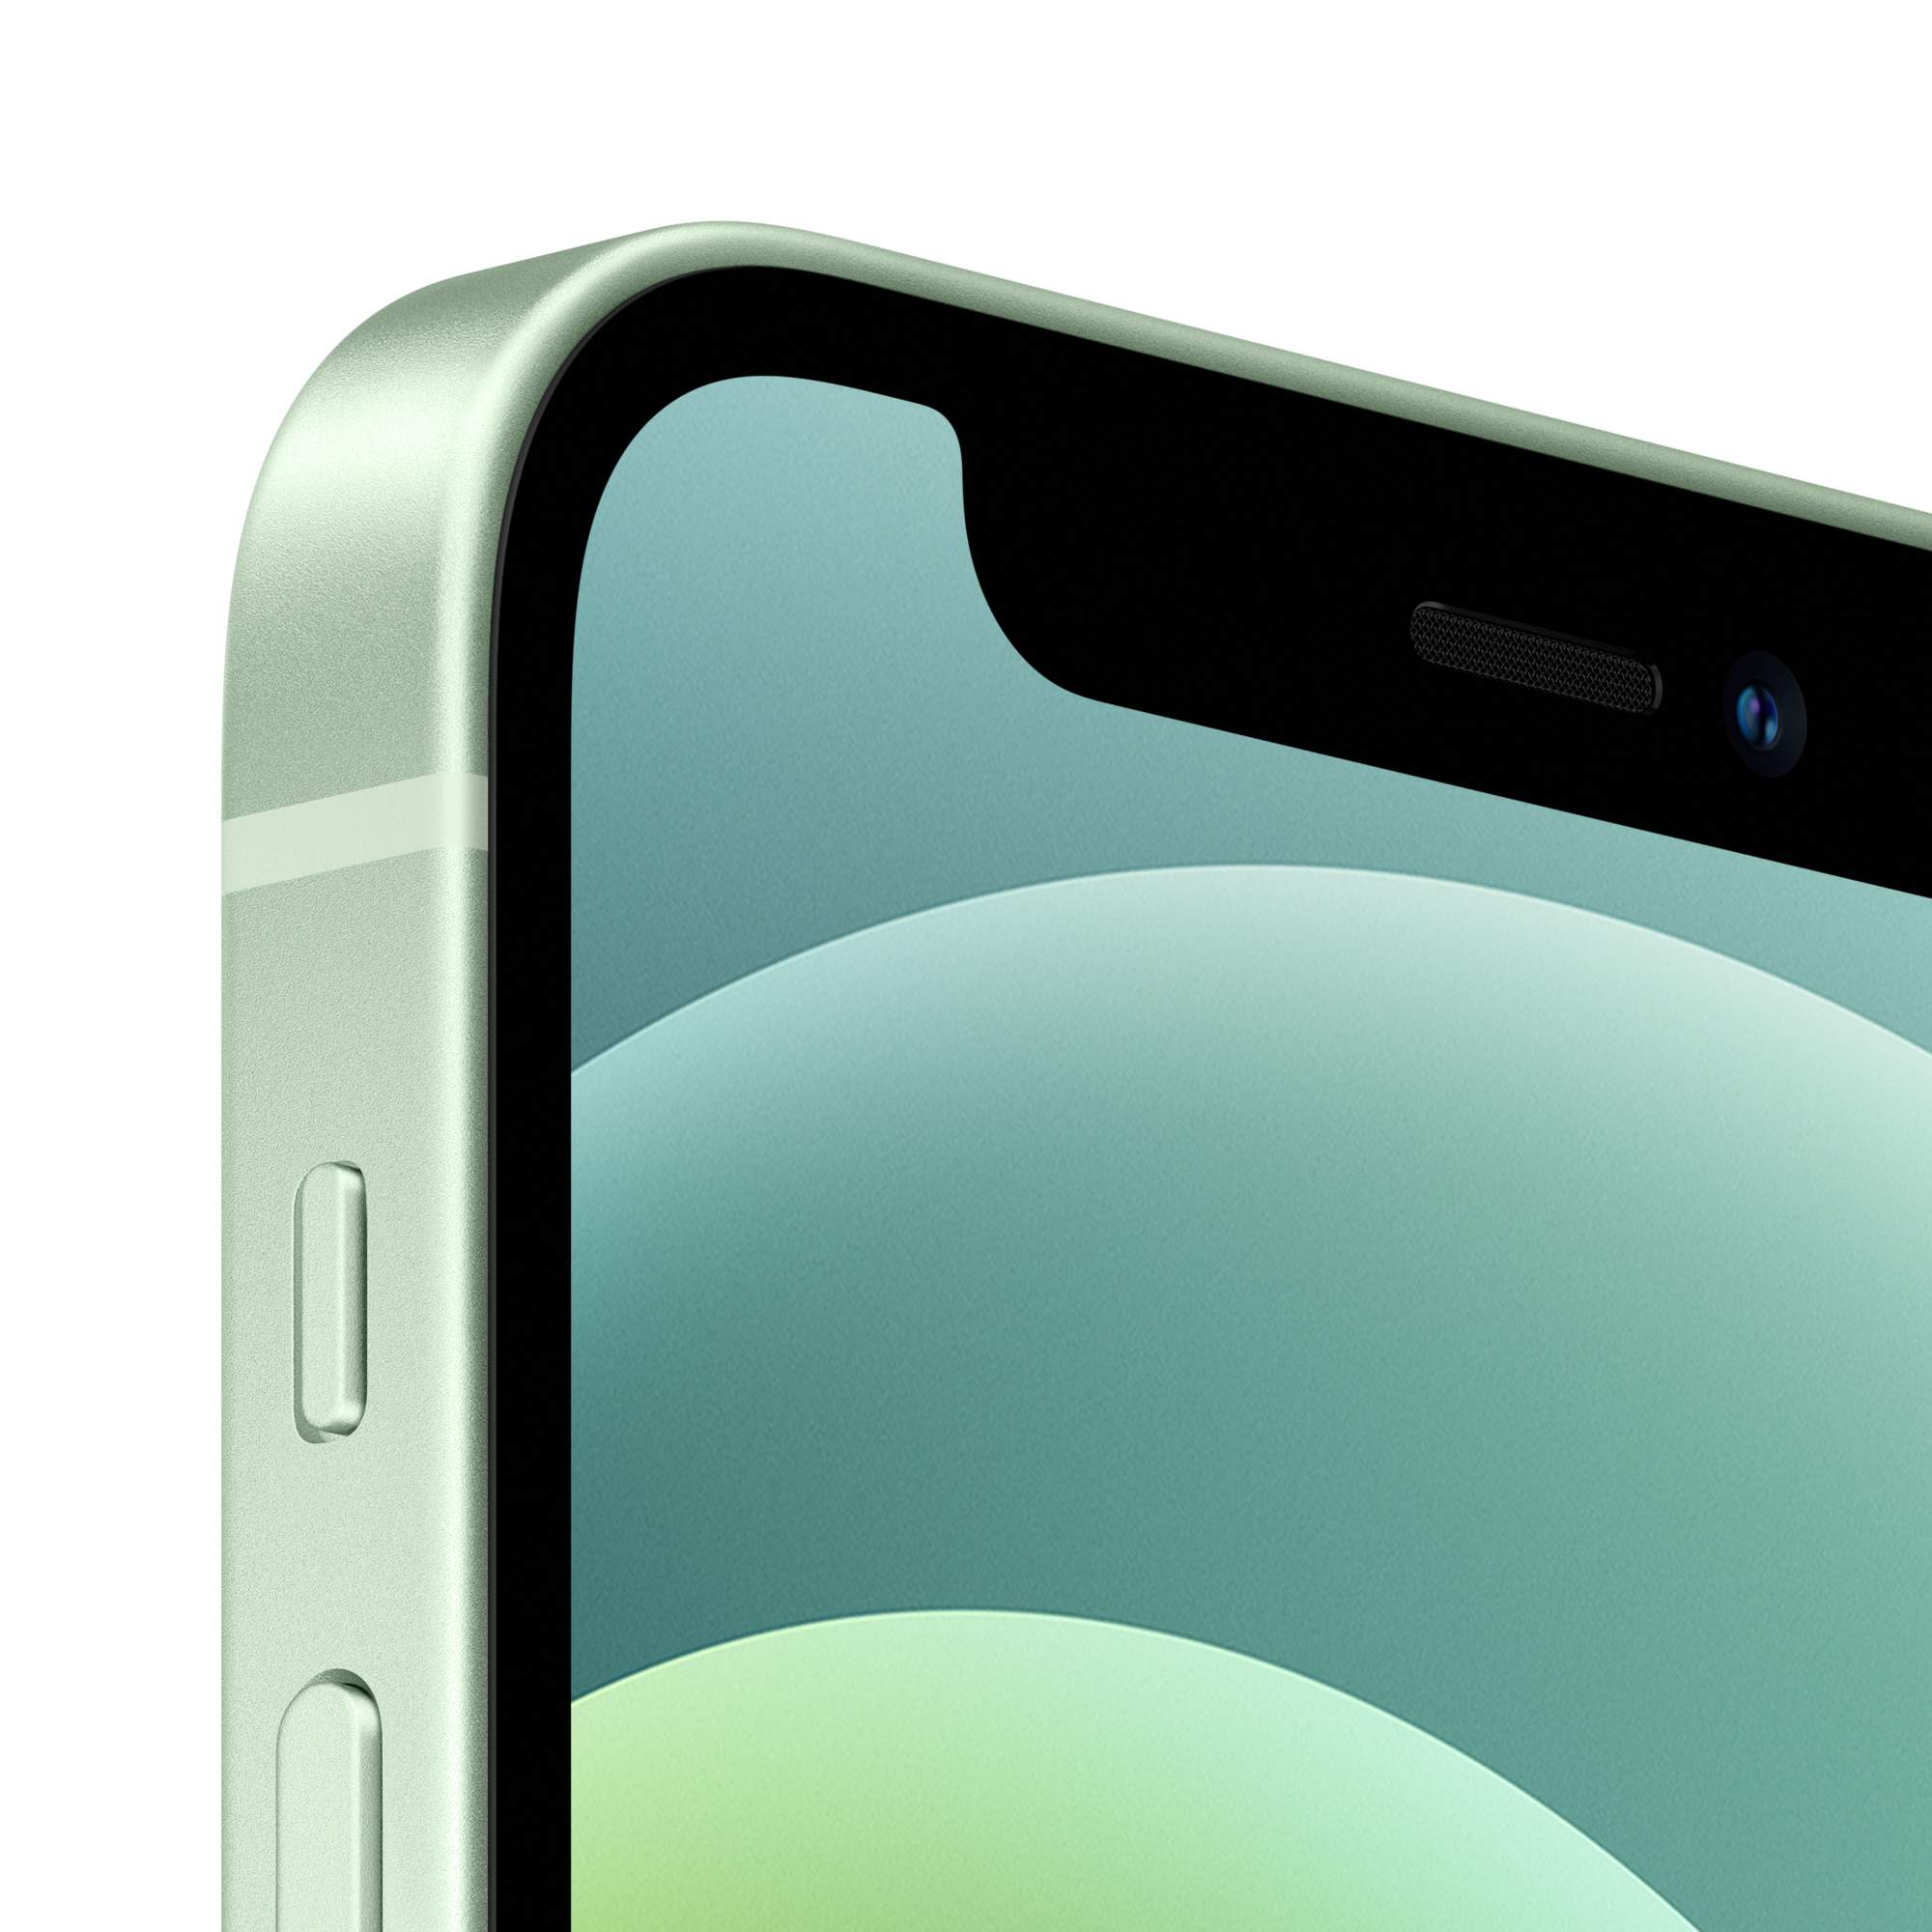 Смартфон Apple iPhone 12 mini 64GB Green (MGE23RU/A) - отзывы покупателей  на маркетплейсе Мегамаркет | Артикул: 100027415736